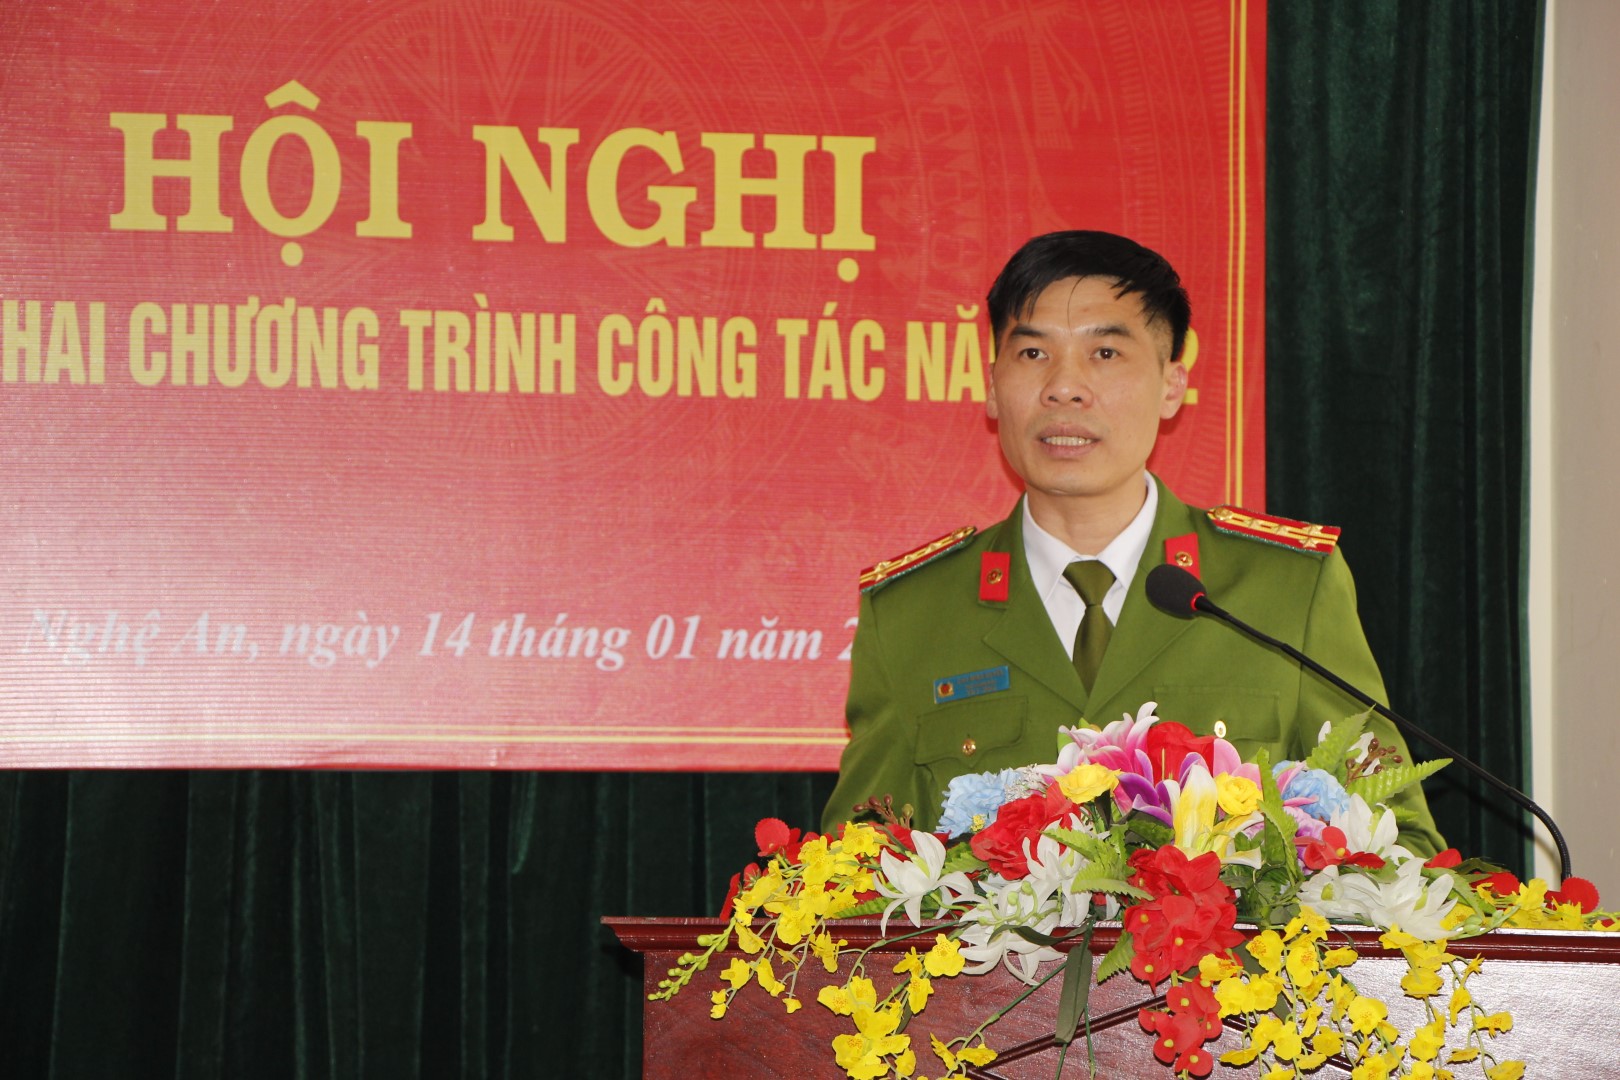 Đồng chí Đại tá Cao Minh Huyền - Phó Giám đốc Công an tỉnh Nghệ An phát biểu tại Hội nghị